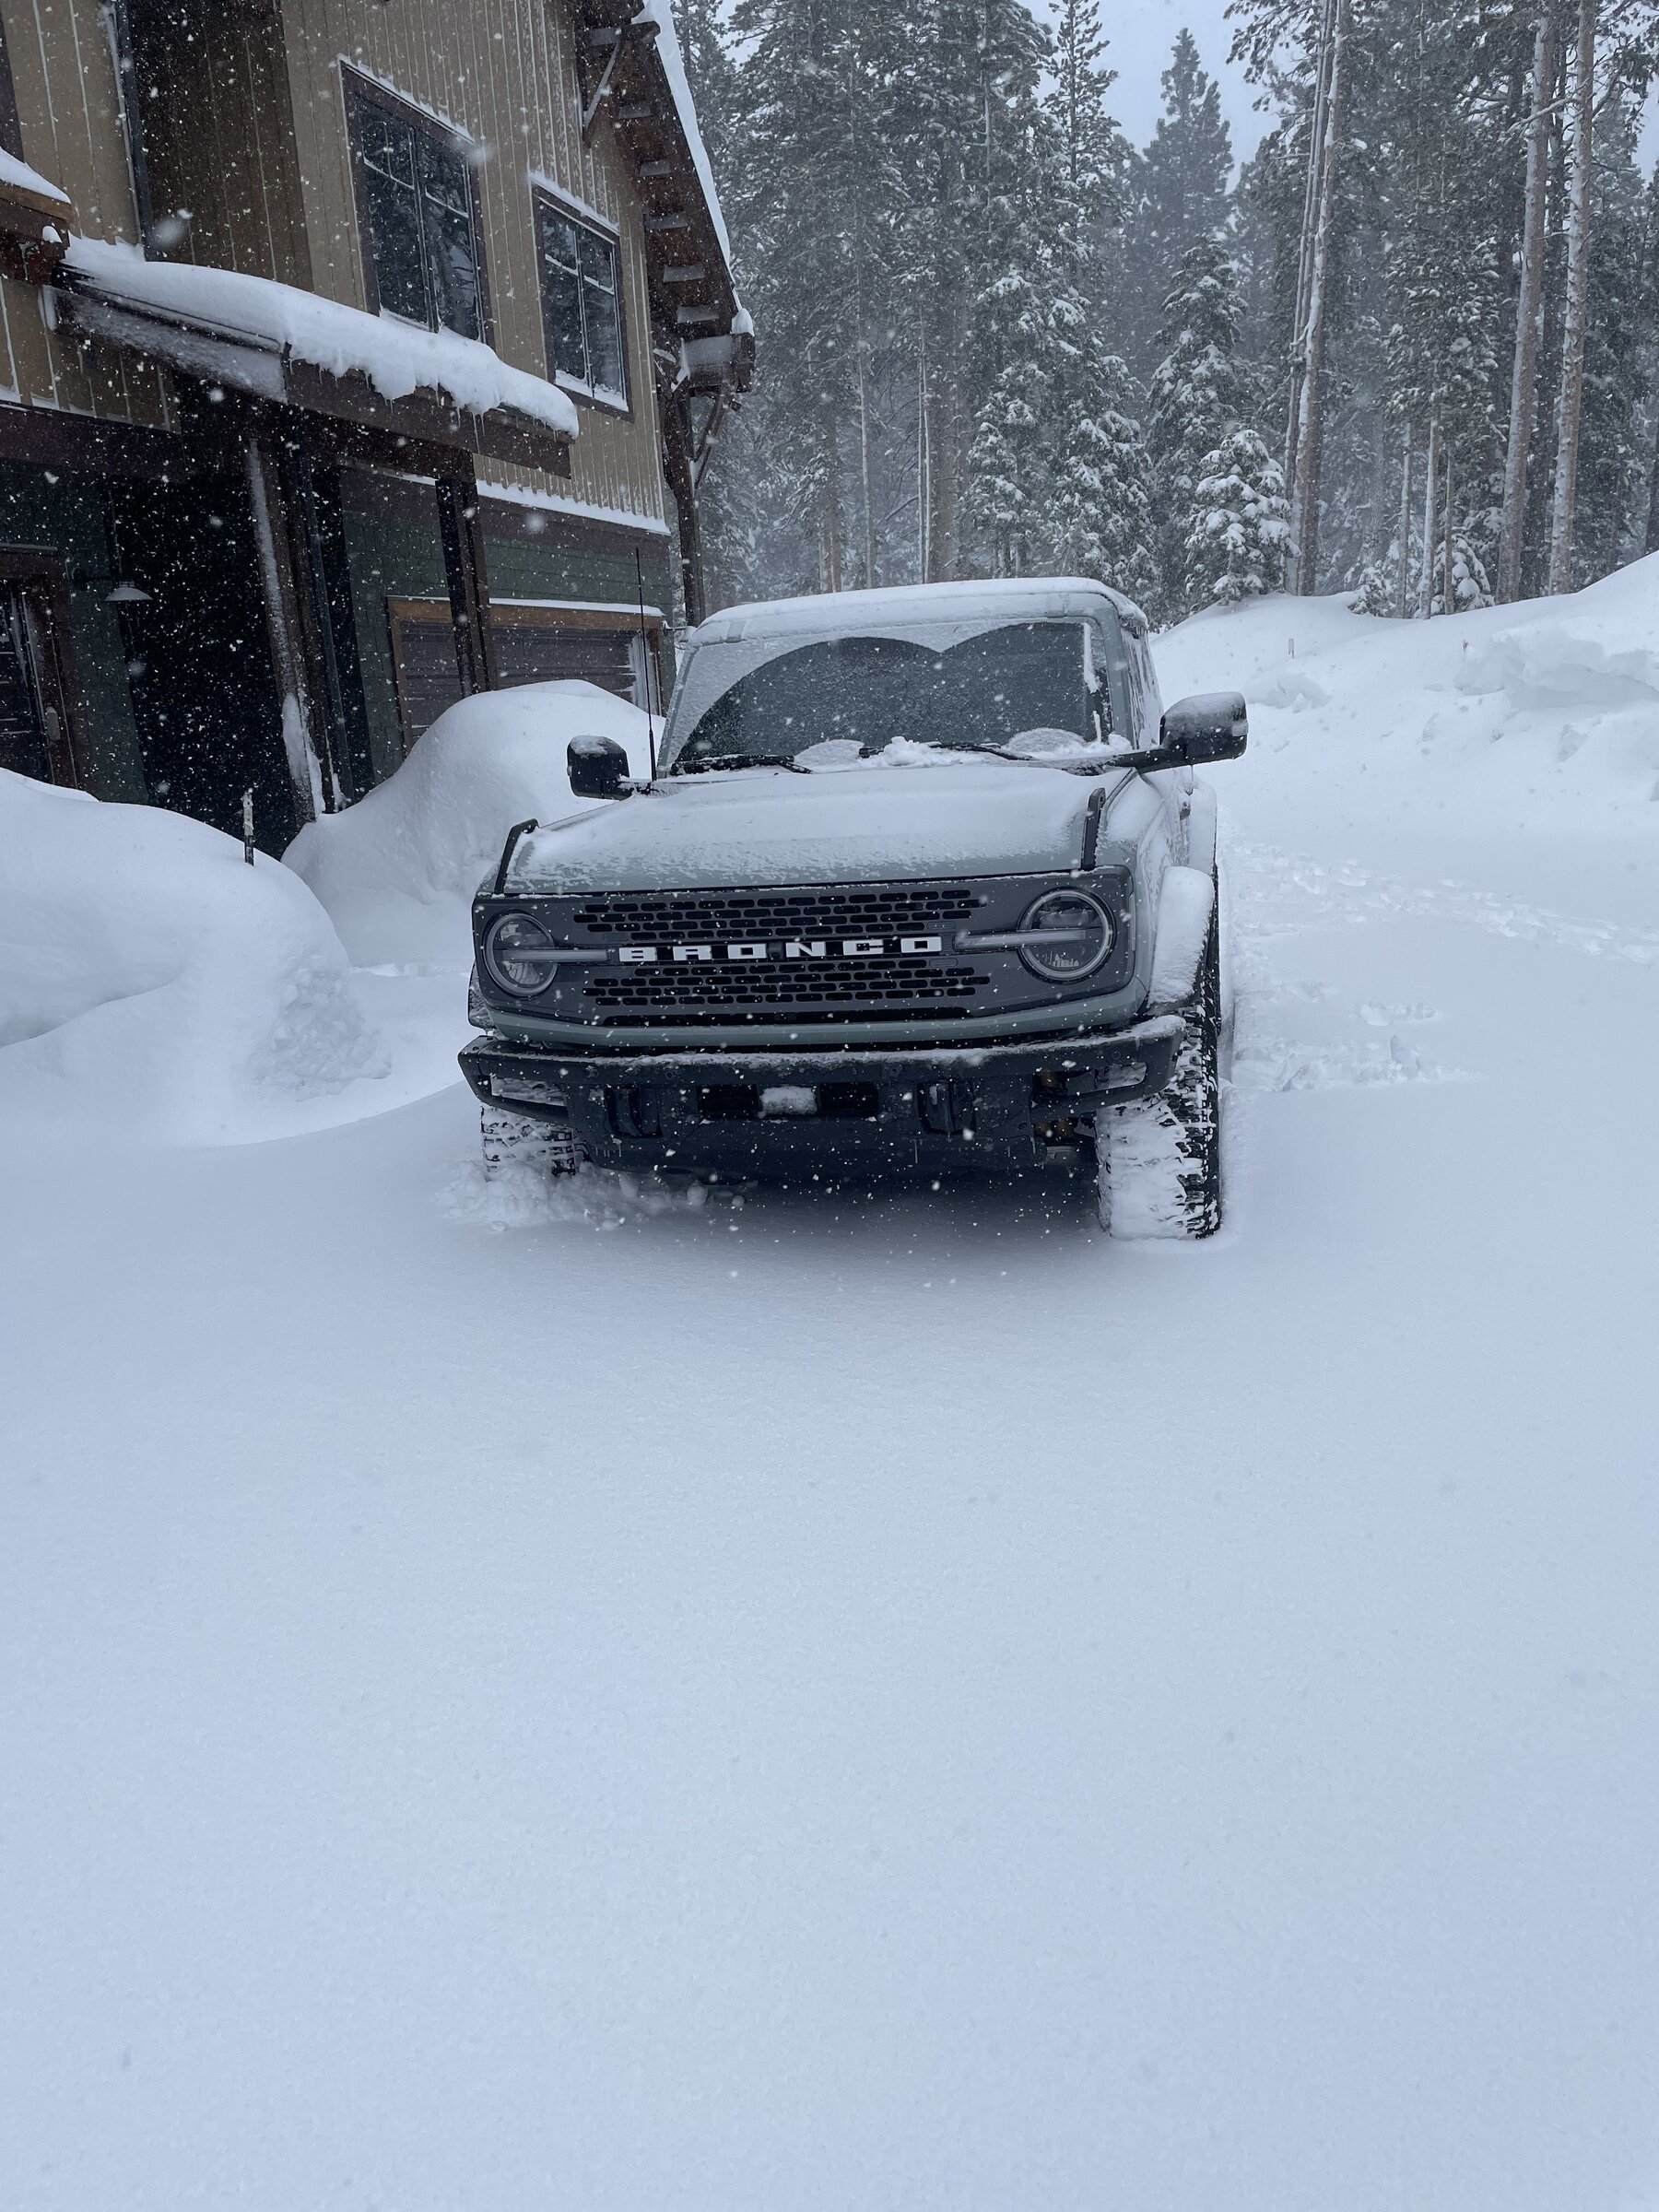 Ford Bronco Badlands Action in a Snowstorm 6F9765D8-65DE-44BA-A79F-0D5E106ED72E